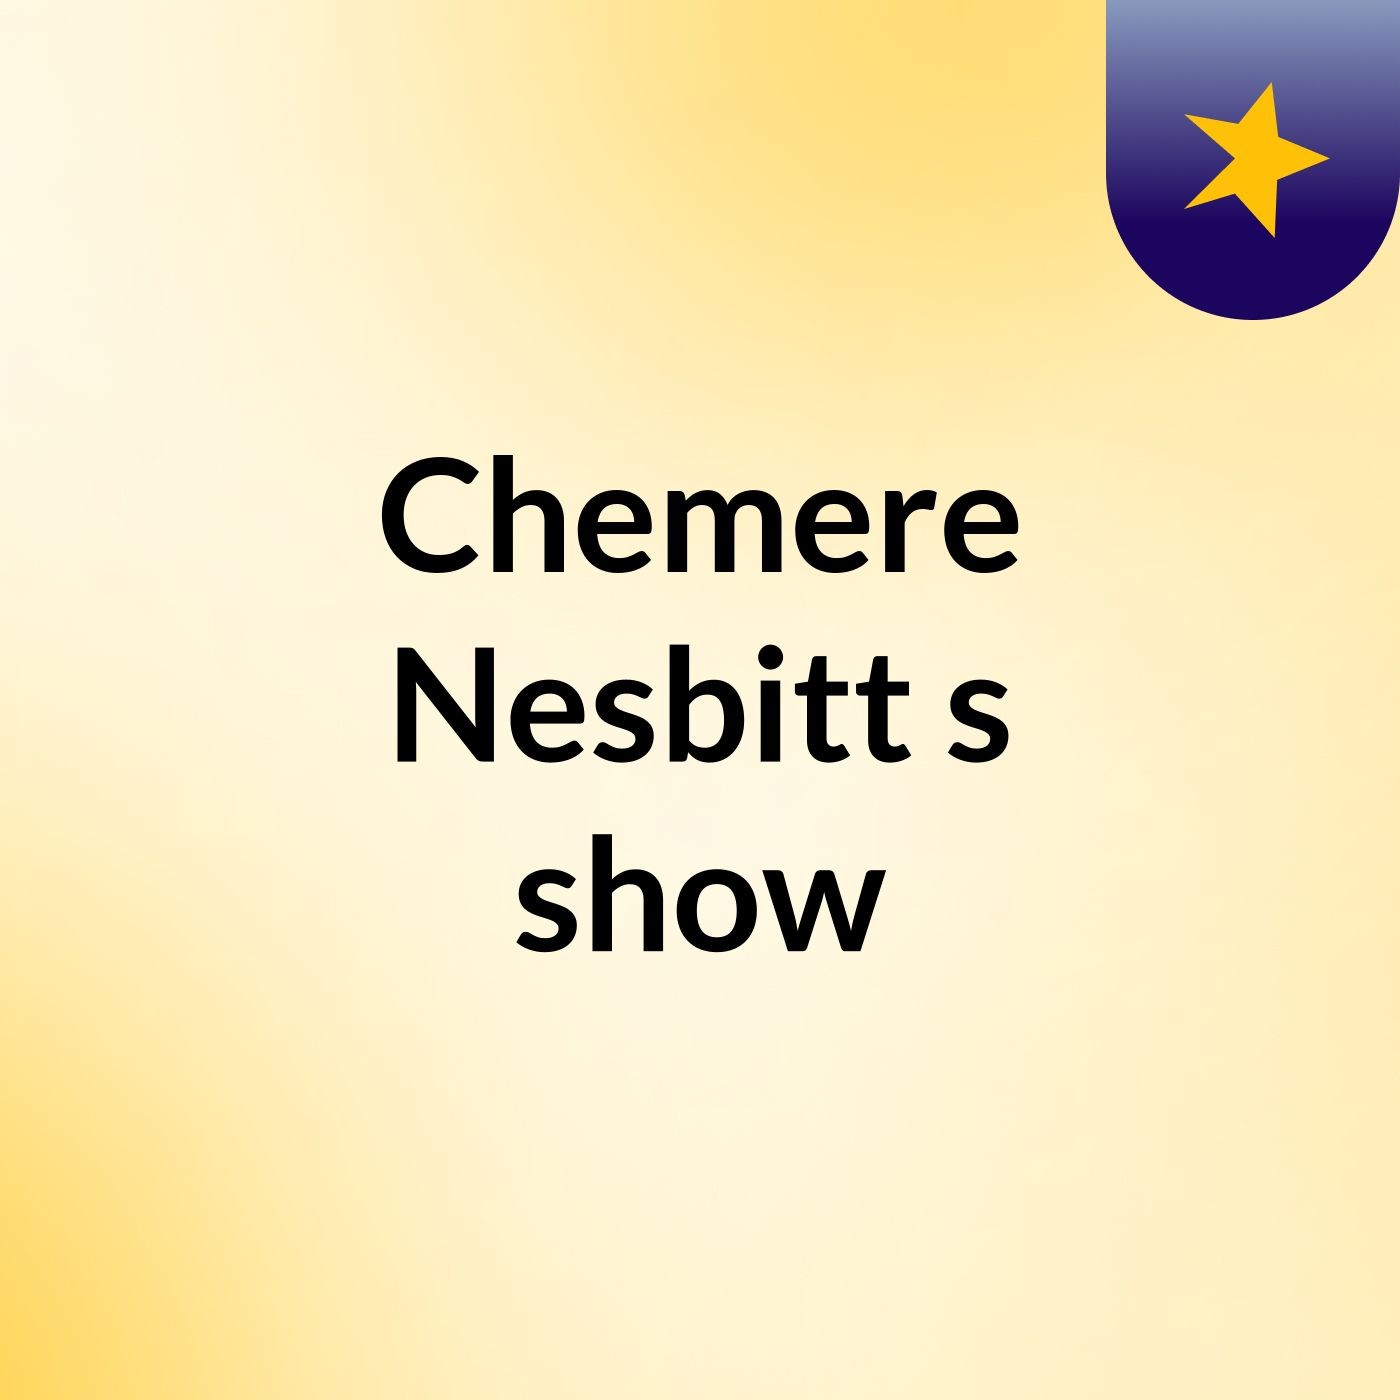 Chemere Nesbitt's show